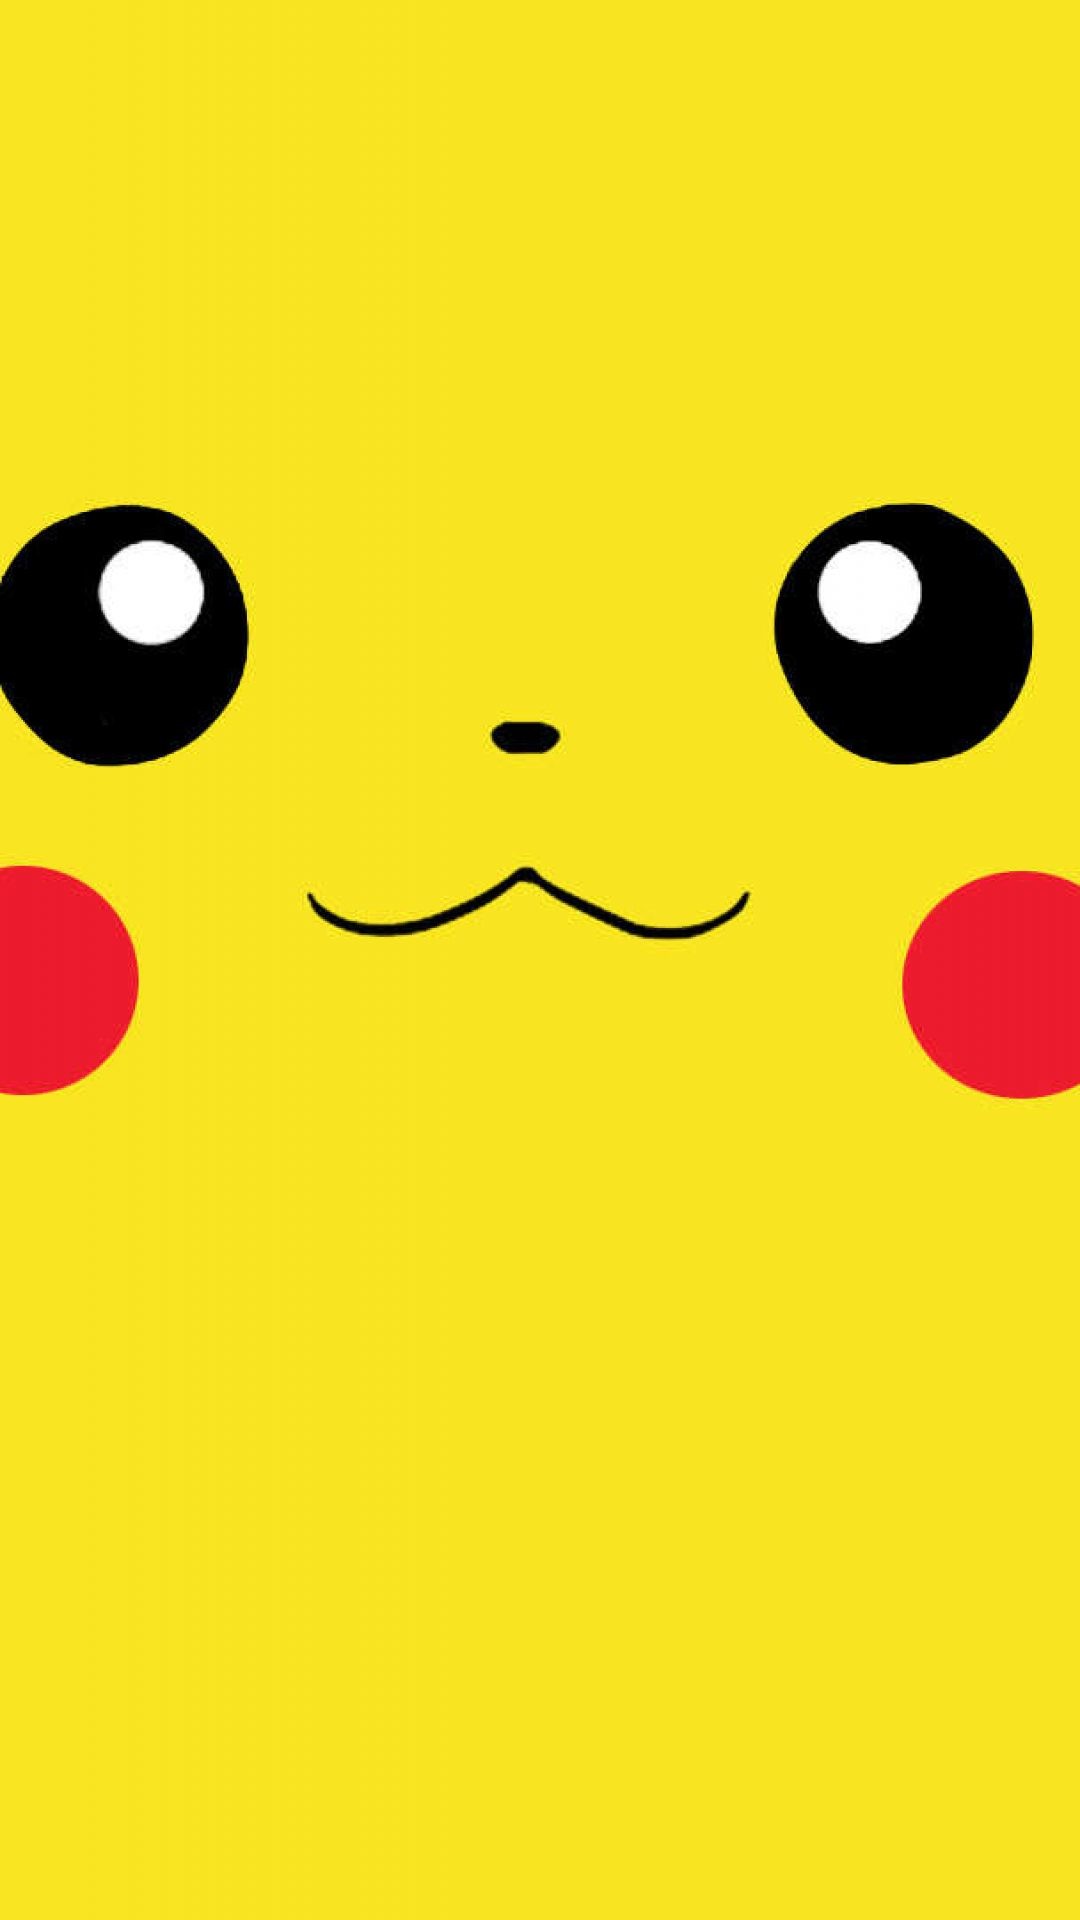 1080x1920 pikachu face wallpaper